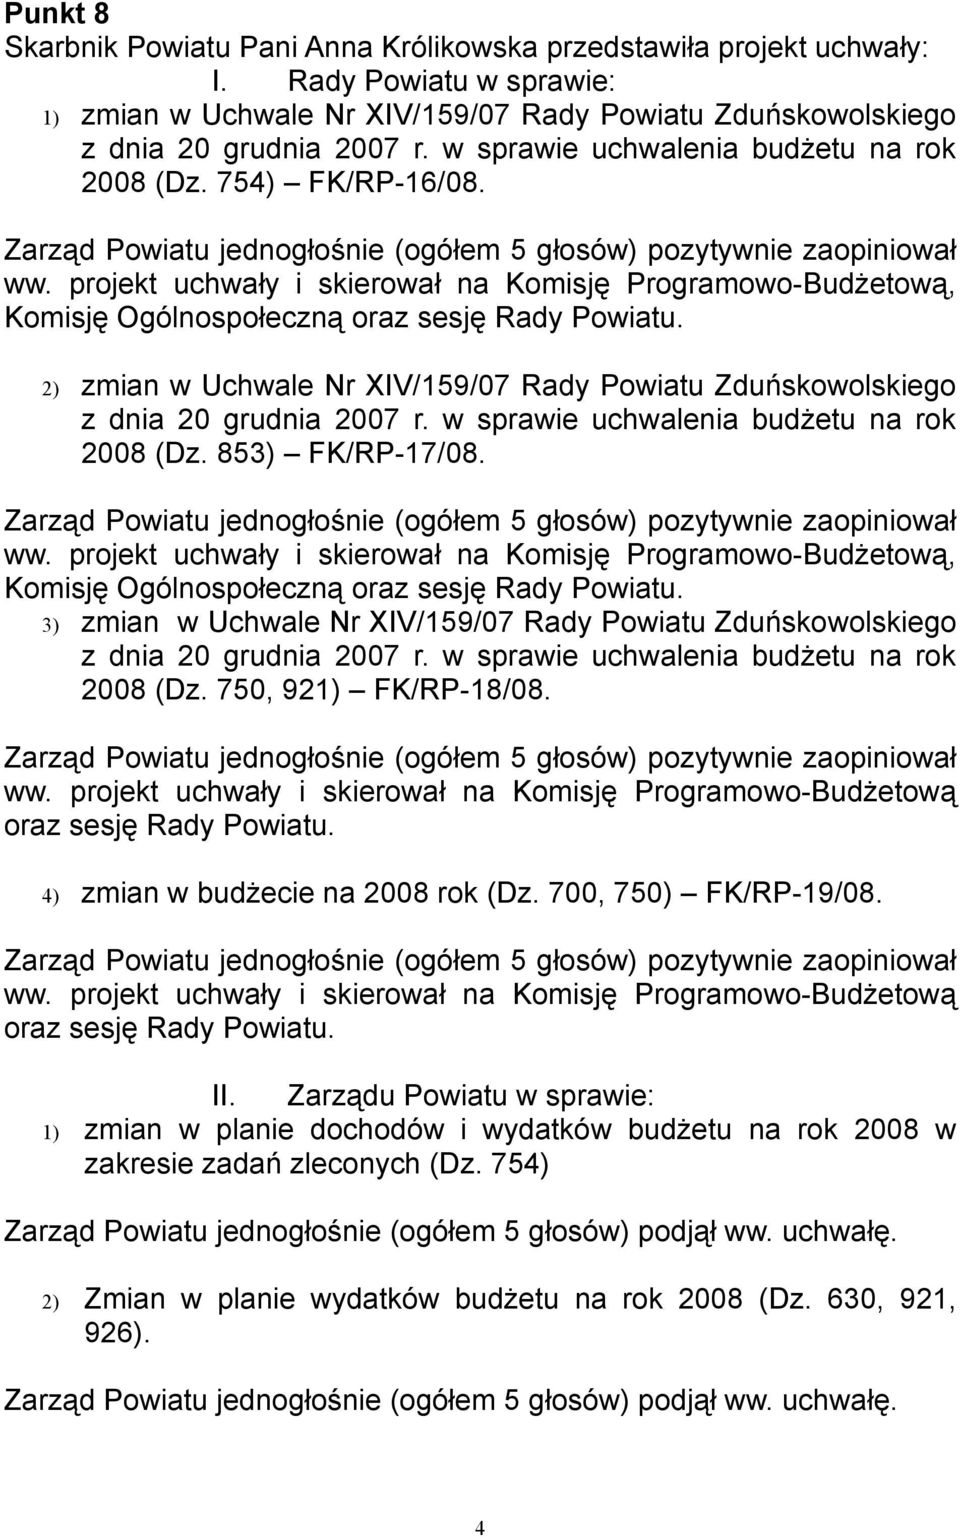 2) zmian w Uchwale Nr XIV/159/07 Rady Powiatu Zduńskowolskiego z dnia 20 grudnia 2007 r. w sprawie uchwalenia budżetu na rok 2008 (Dz. 853) FK/RP-17/08. ww.